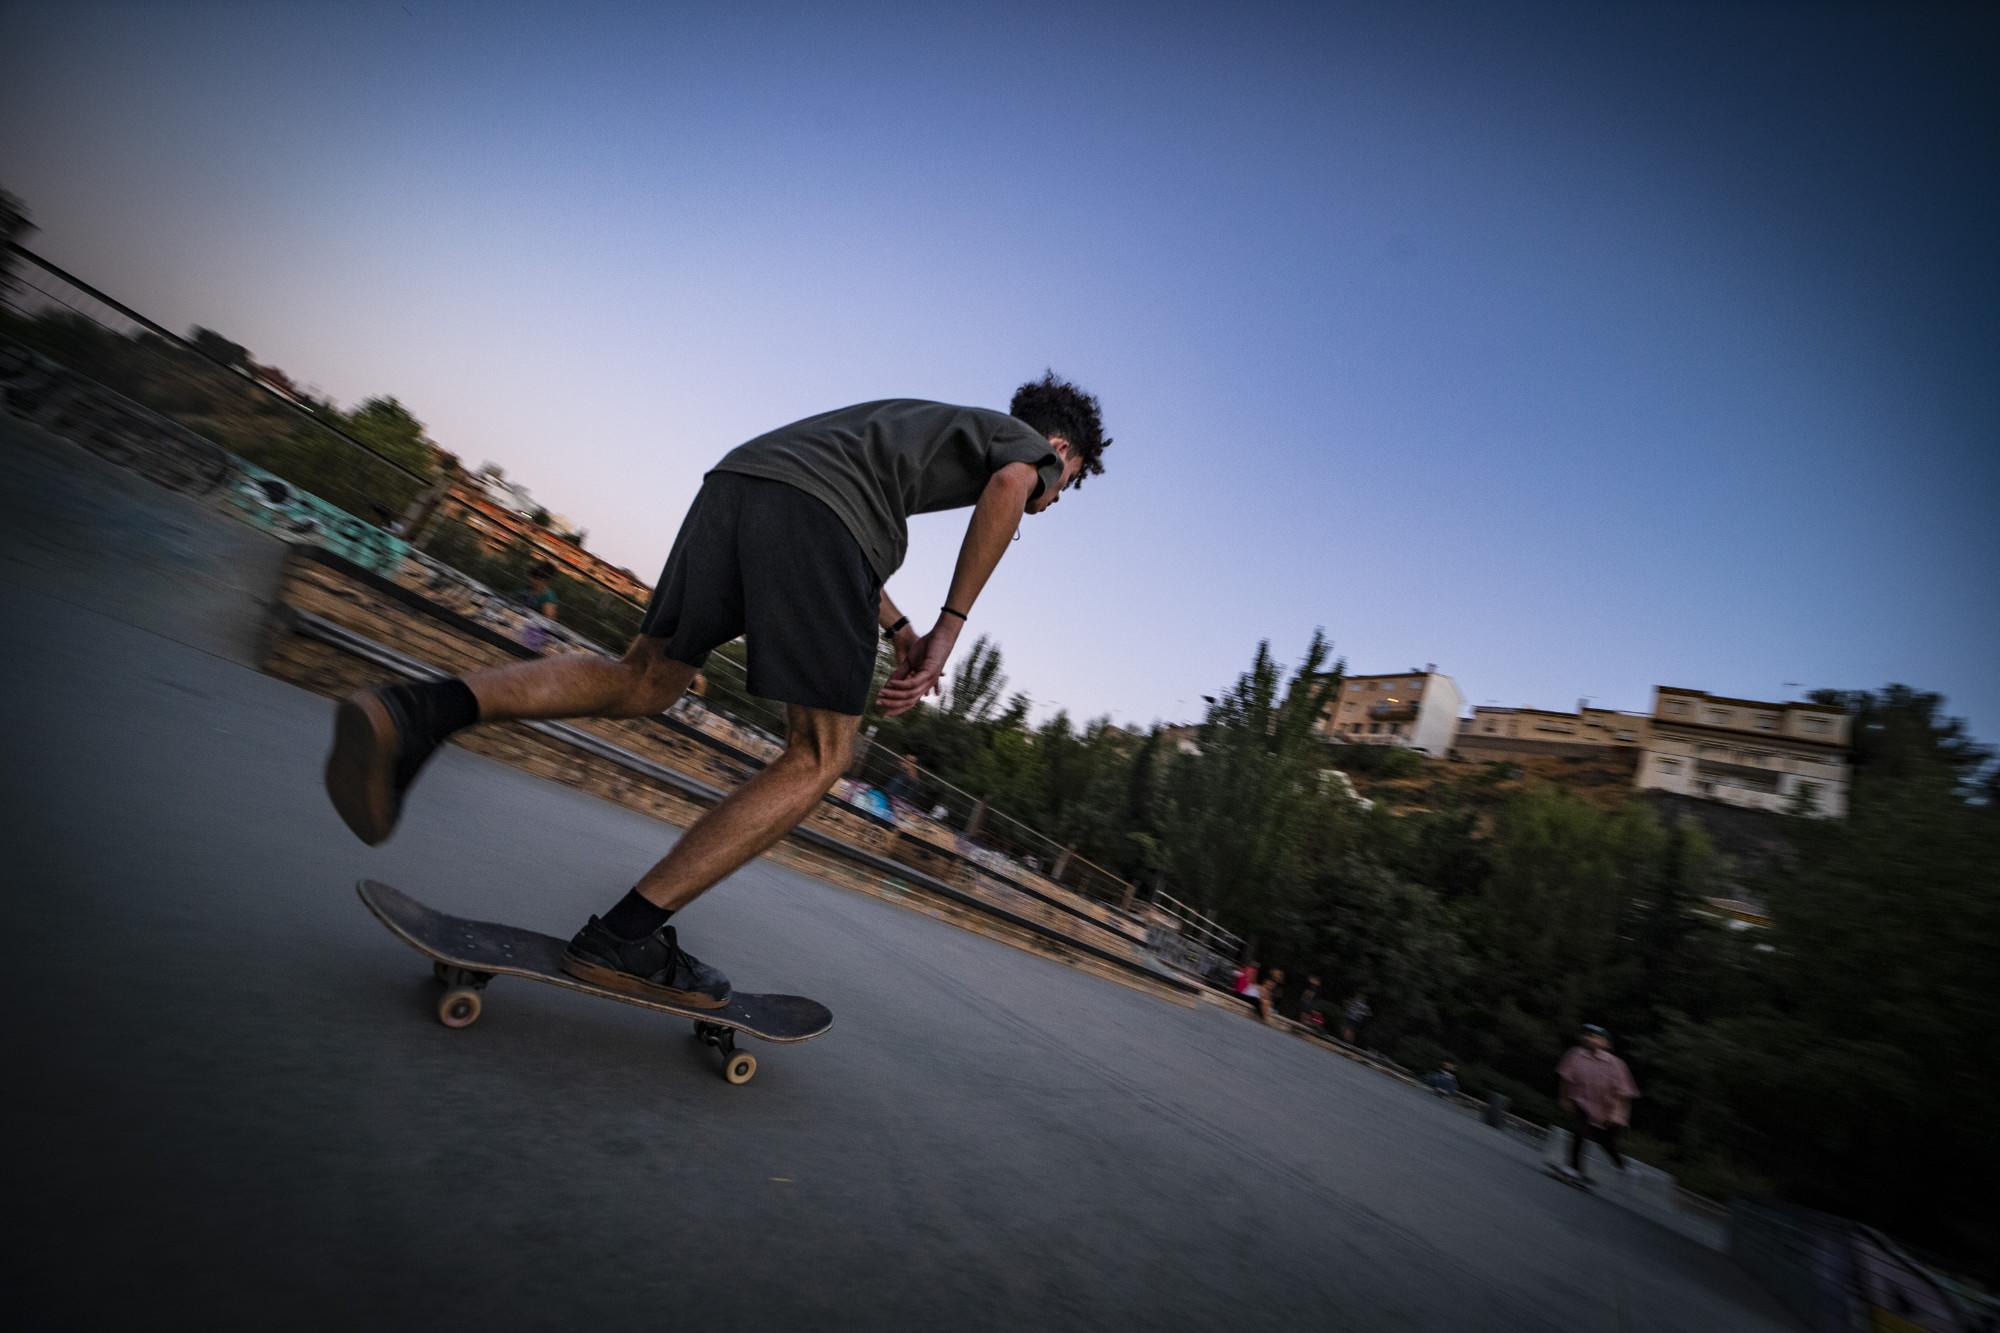 Skaters en el skatepark Bola de Oro, Granada - 10